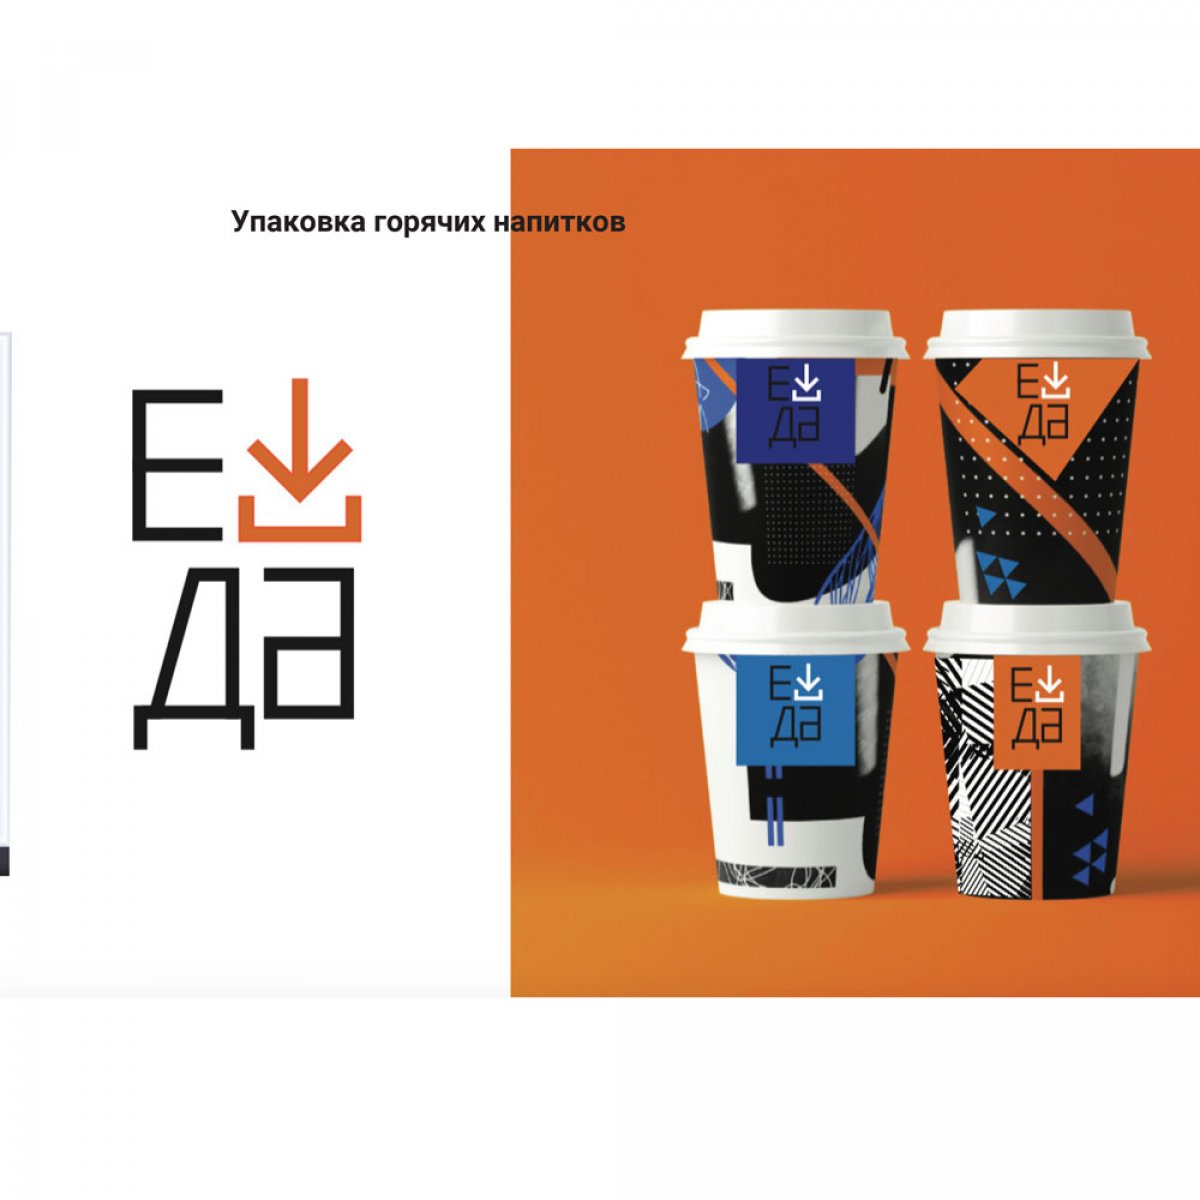 Дипломный проект разработки дизайна для сети вендинговой торговли Е-ДА студентки 4 курса профиля Графический дизайн – Виктории Бабичевой.